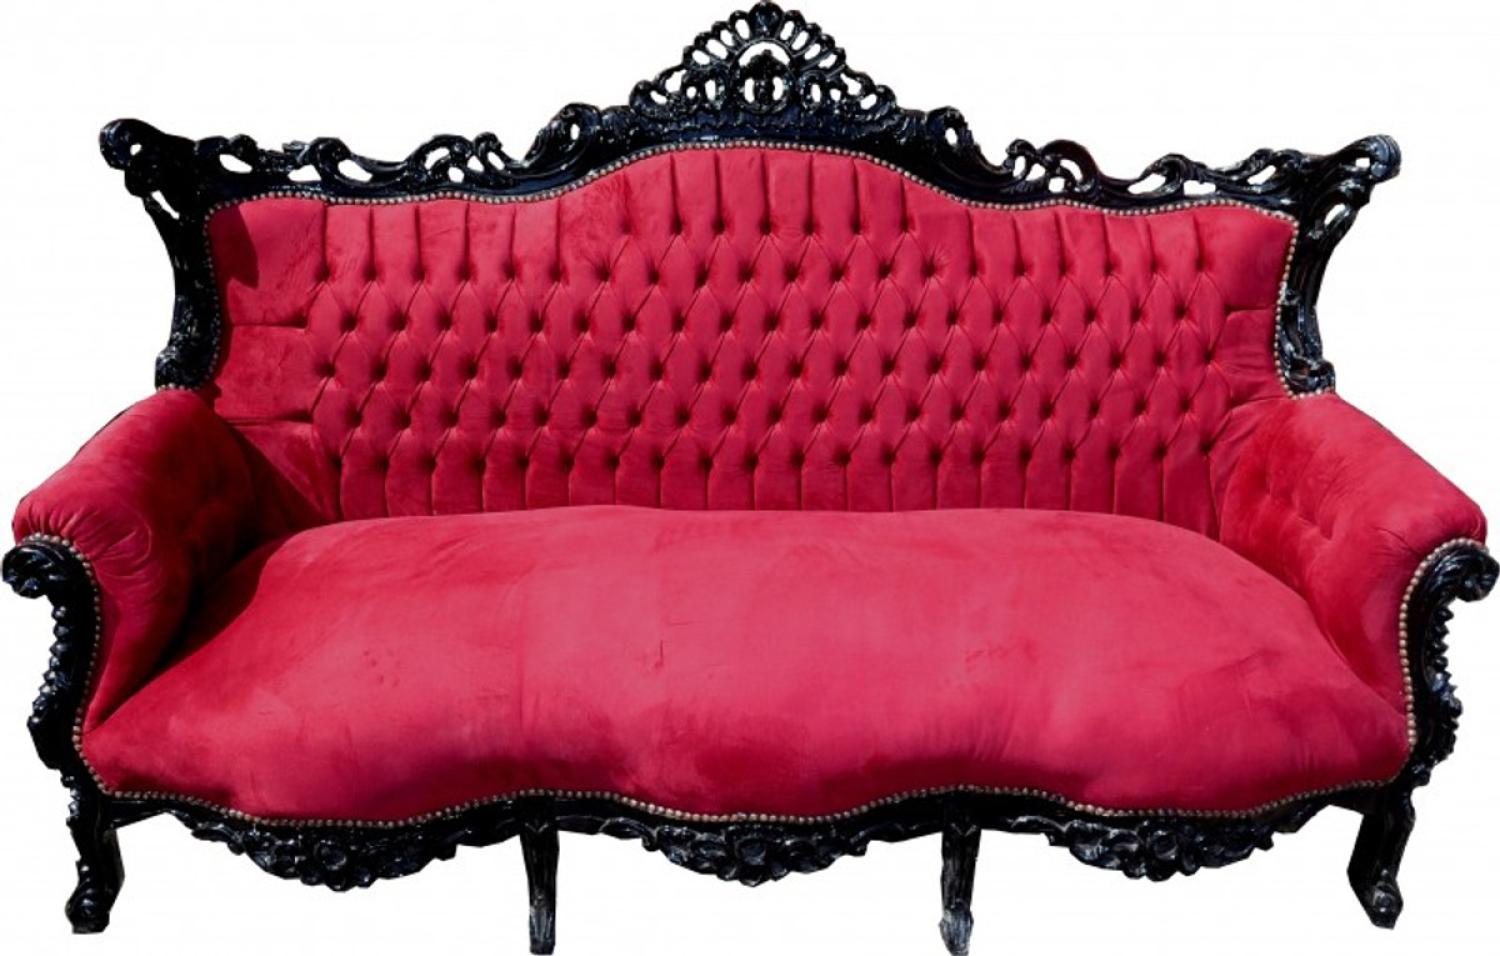 Casa Padrino Barock 3er Sofa Master Bordeaux Rot / Schwarz - Wohnzimmer Möbel Couch Lounge Bild 1